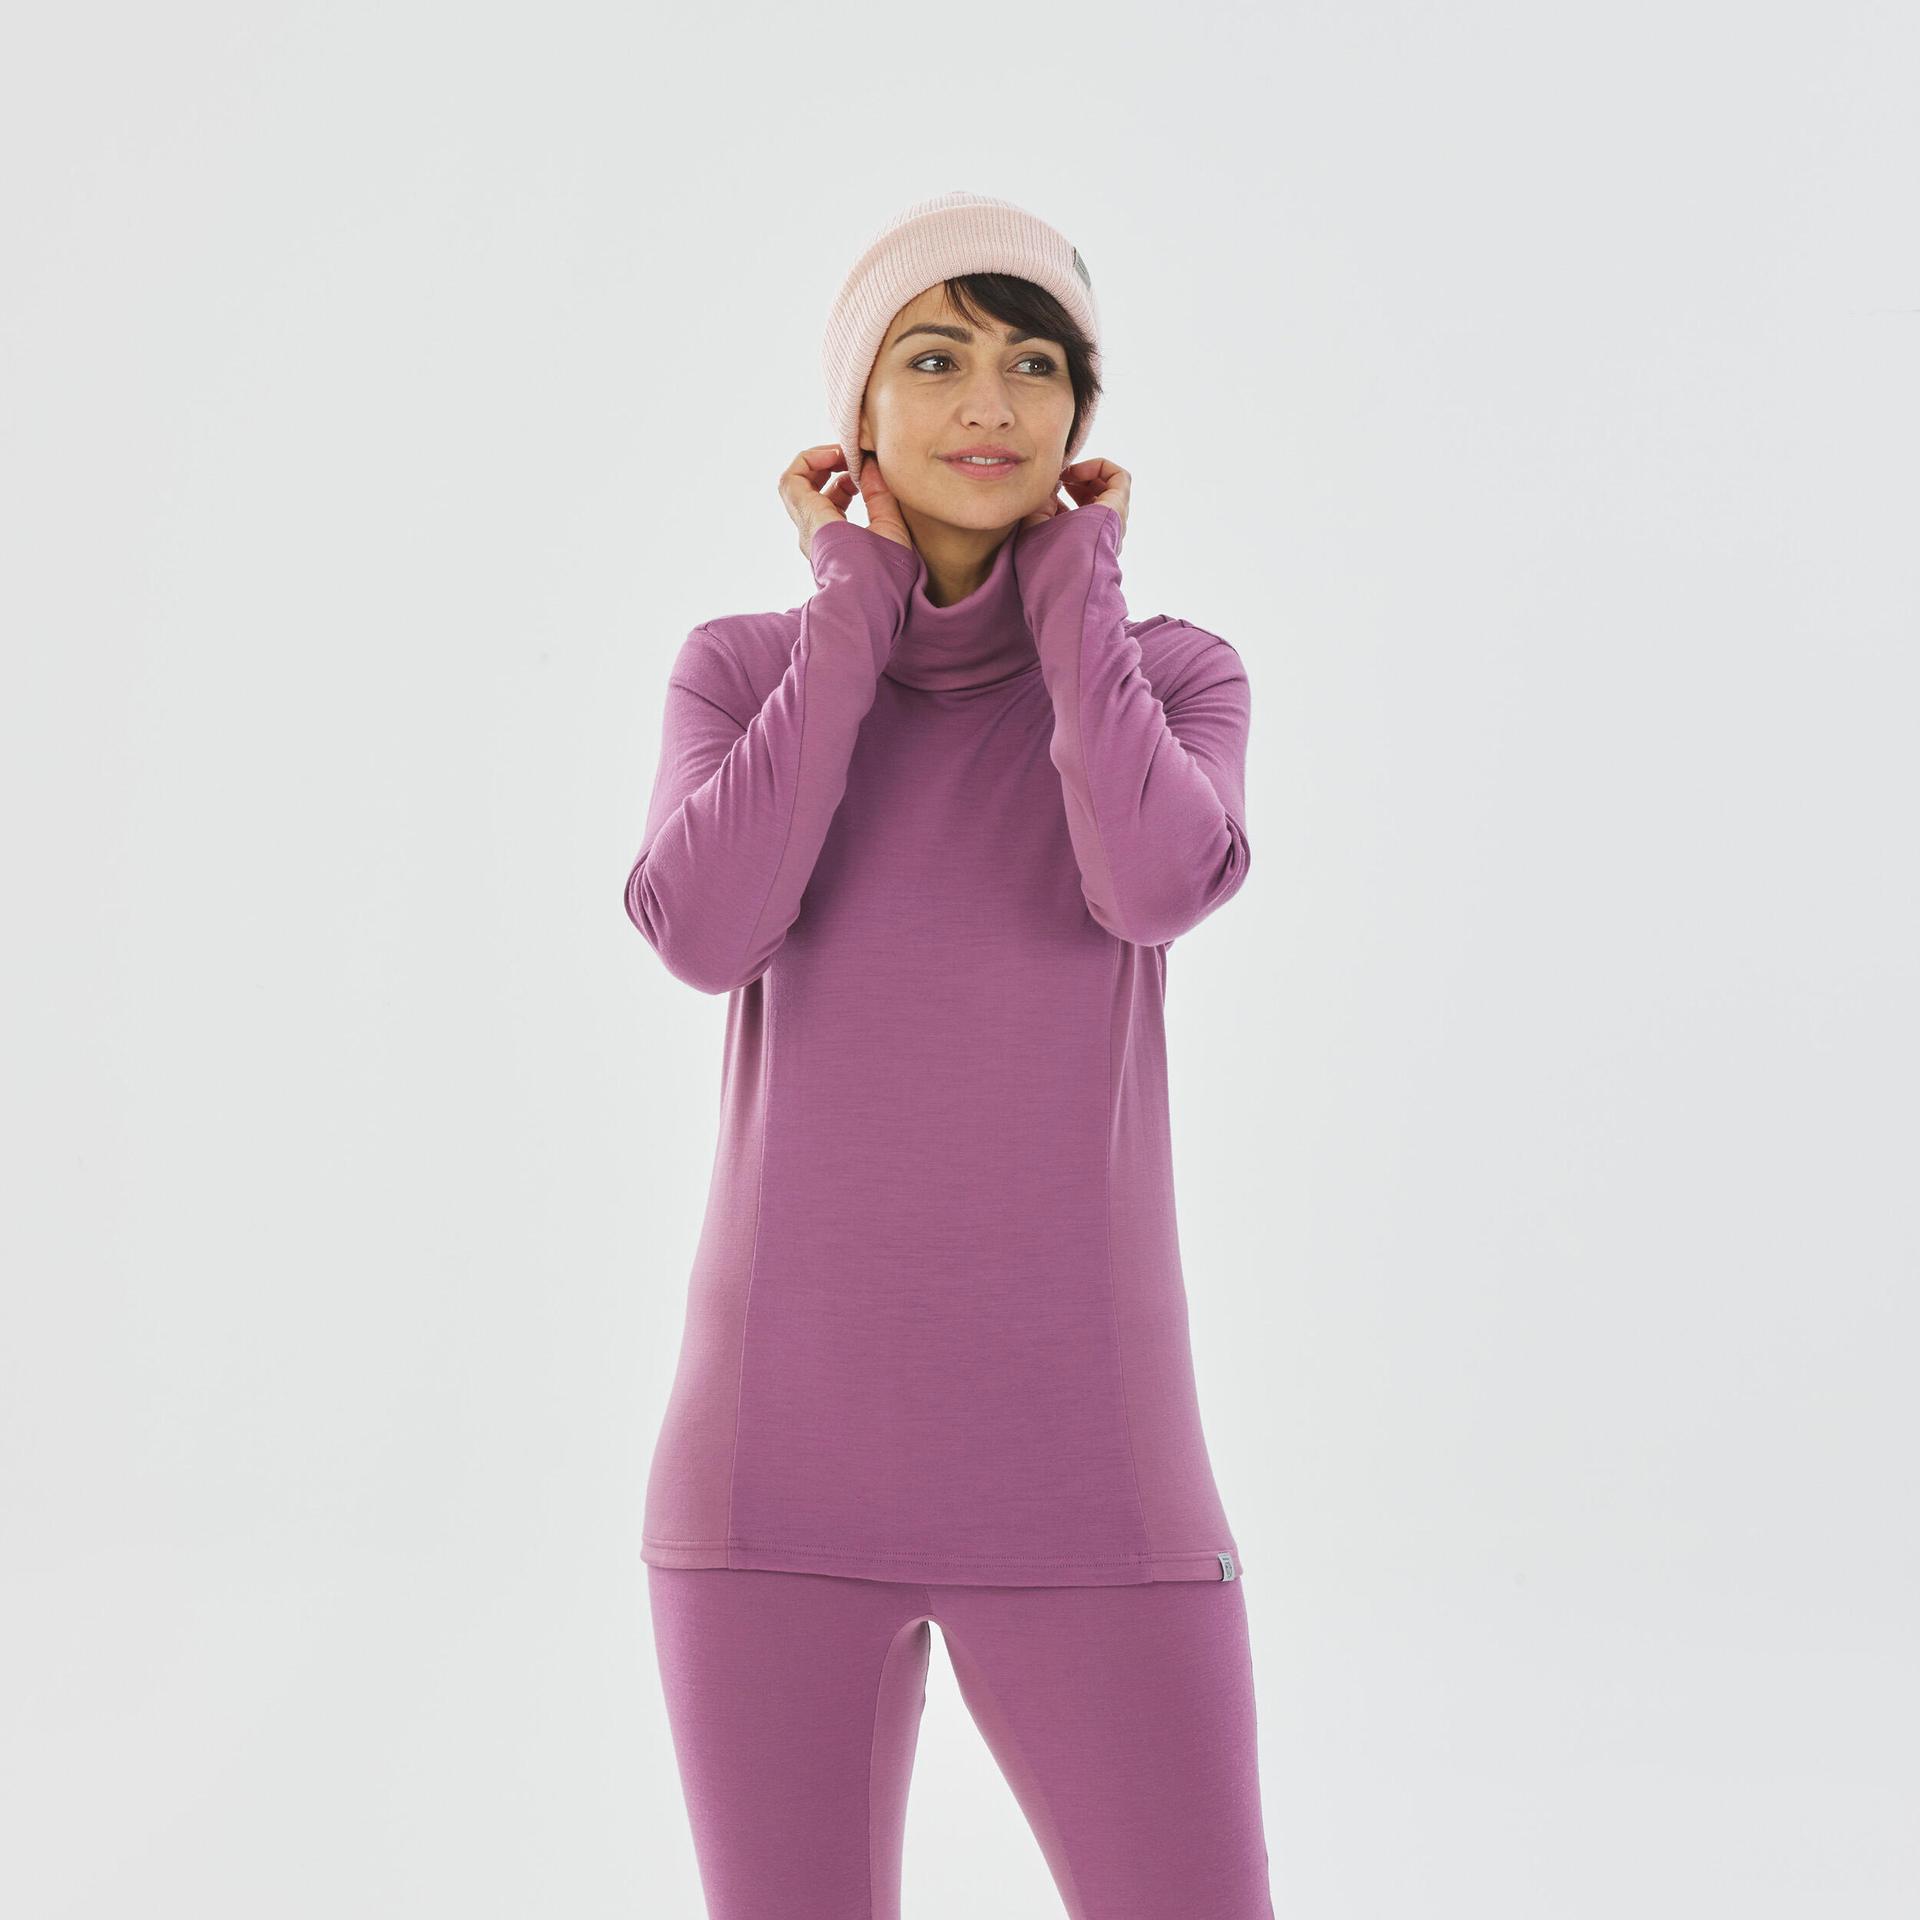 women's ski base layer top - bl 900 wool neck-
purple